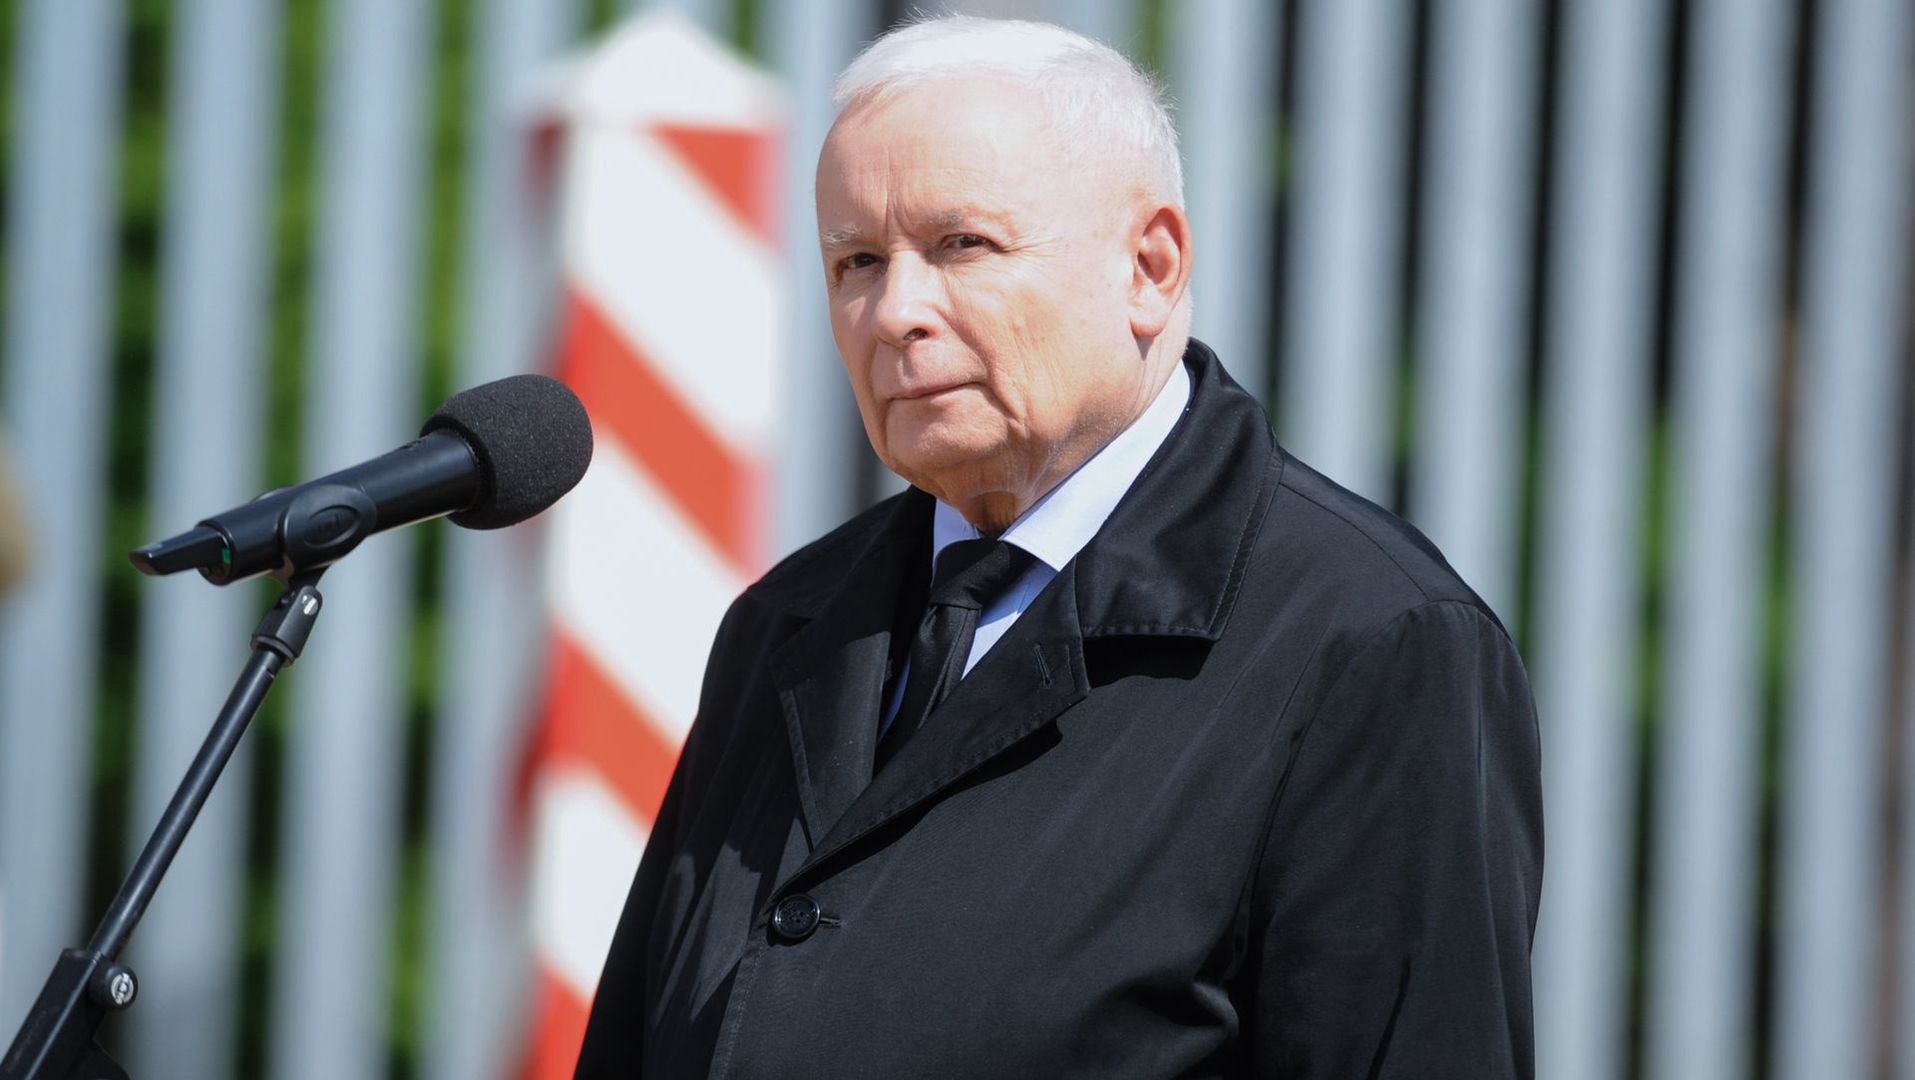 Jarosław Kaczyński przy murze oddzielającym Polskę od Białorusi. Przekaz - nielegalnie nie przedostanie się do nas żaden migrant